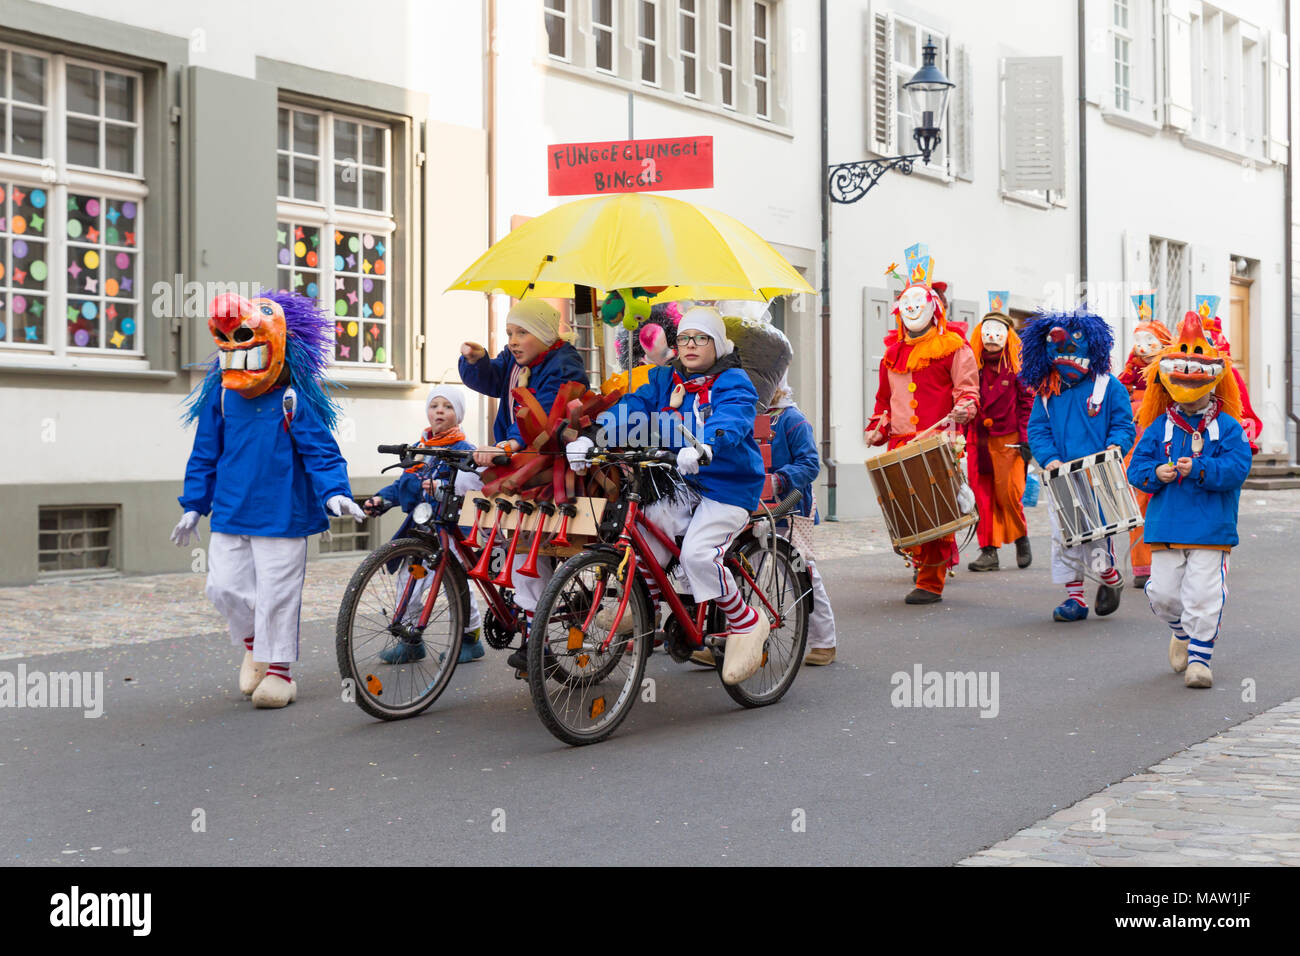 Carnaval de Bâle. Augustinergasse, Bâle, Suisse - 21 février 2018. Groupe d'enfants avec un énorme vélo et costumes colorés Banque D'Images